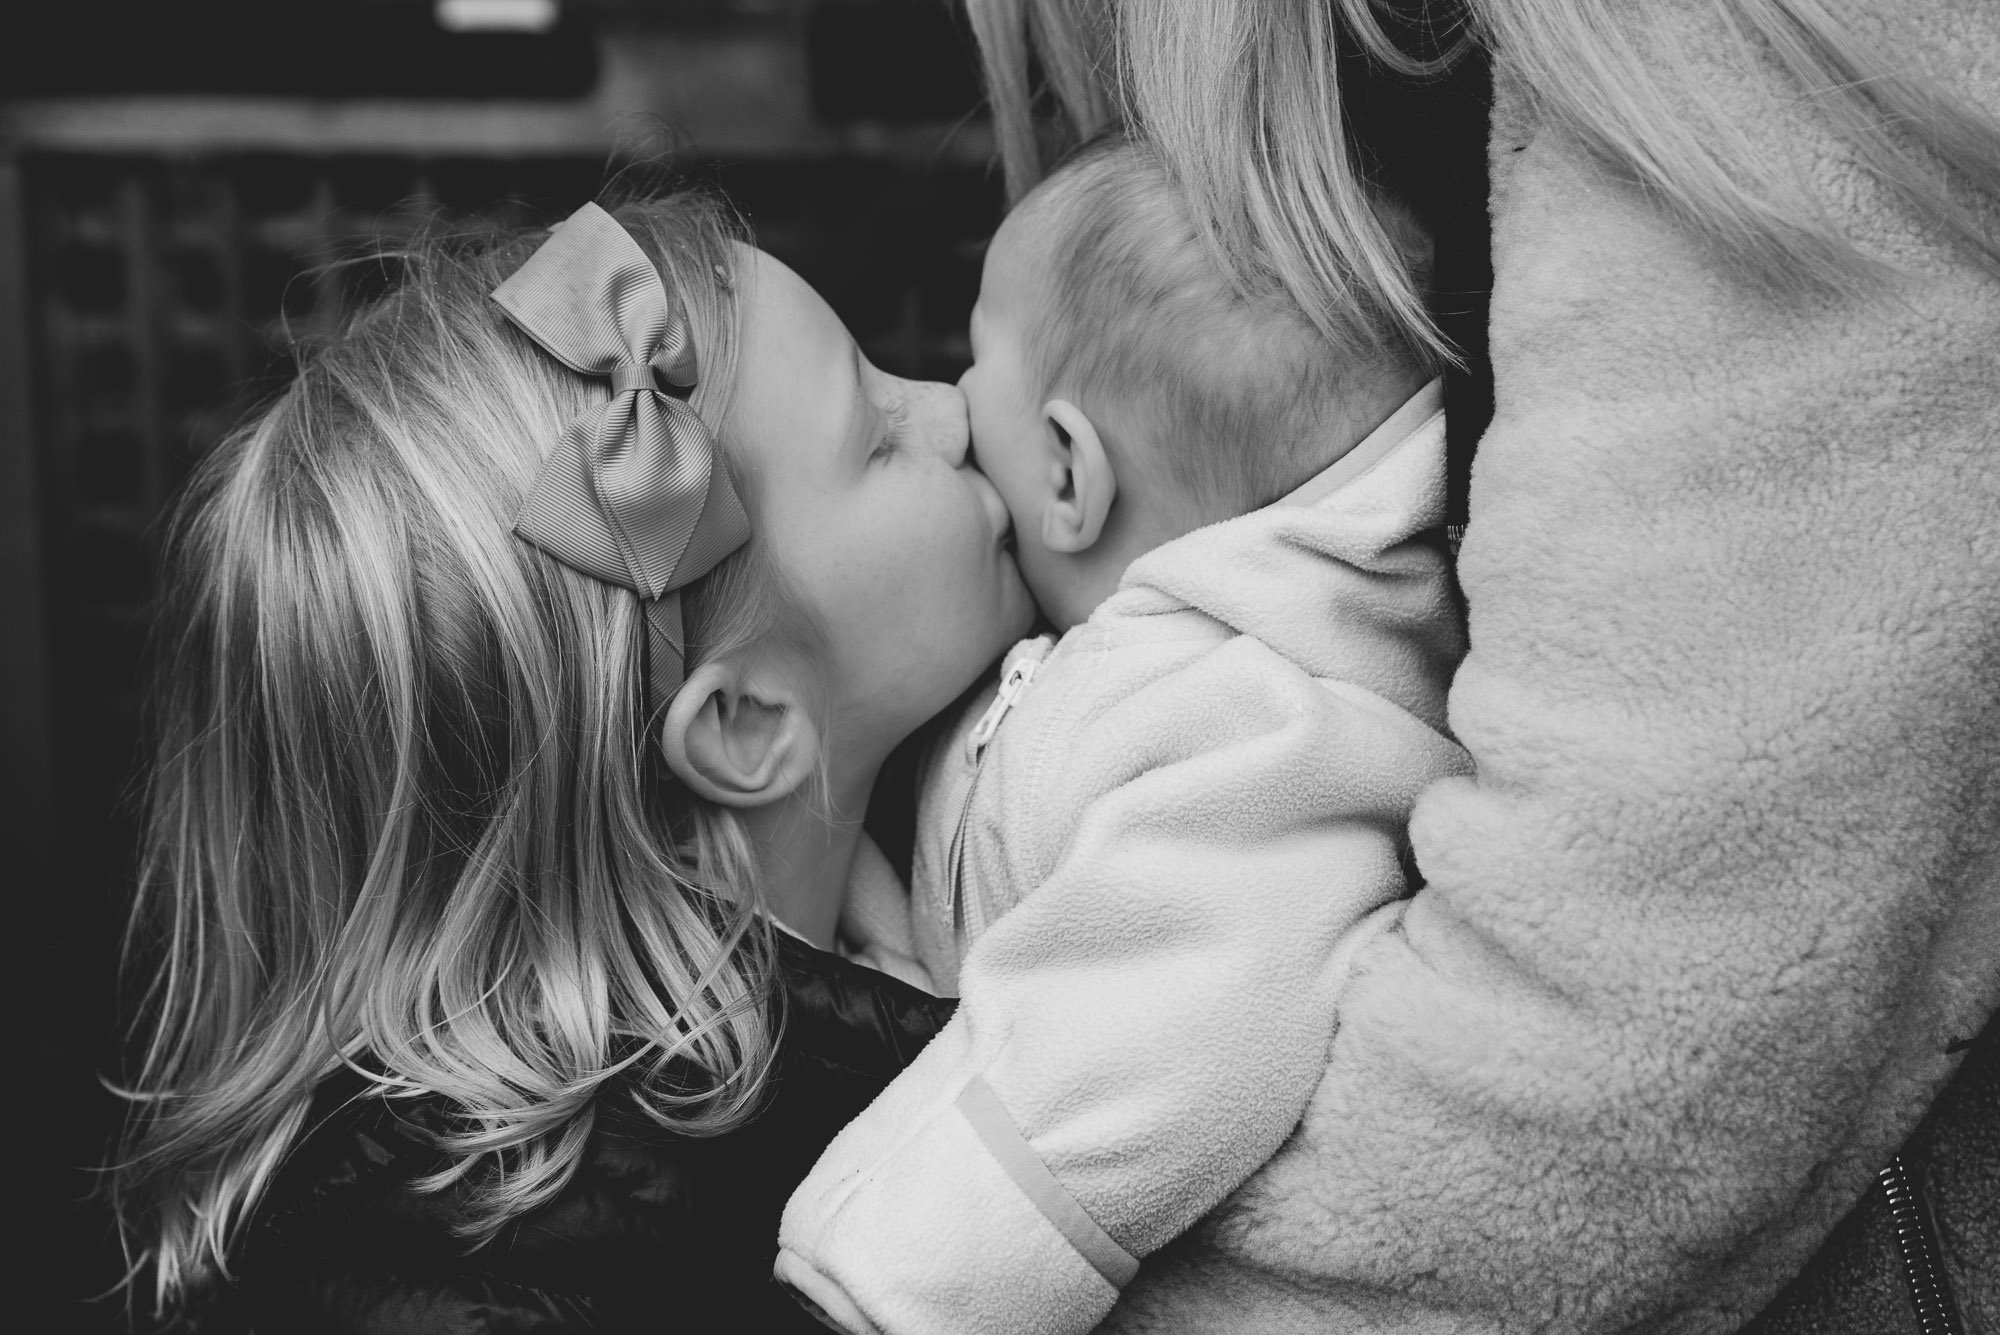 london-family-photographer-sister-kissing-baby-newborn-girl-family-photoshoot-belgravia.jpg